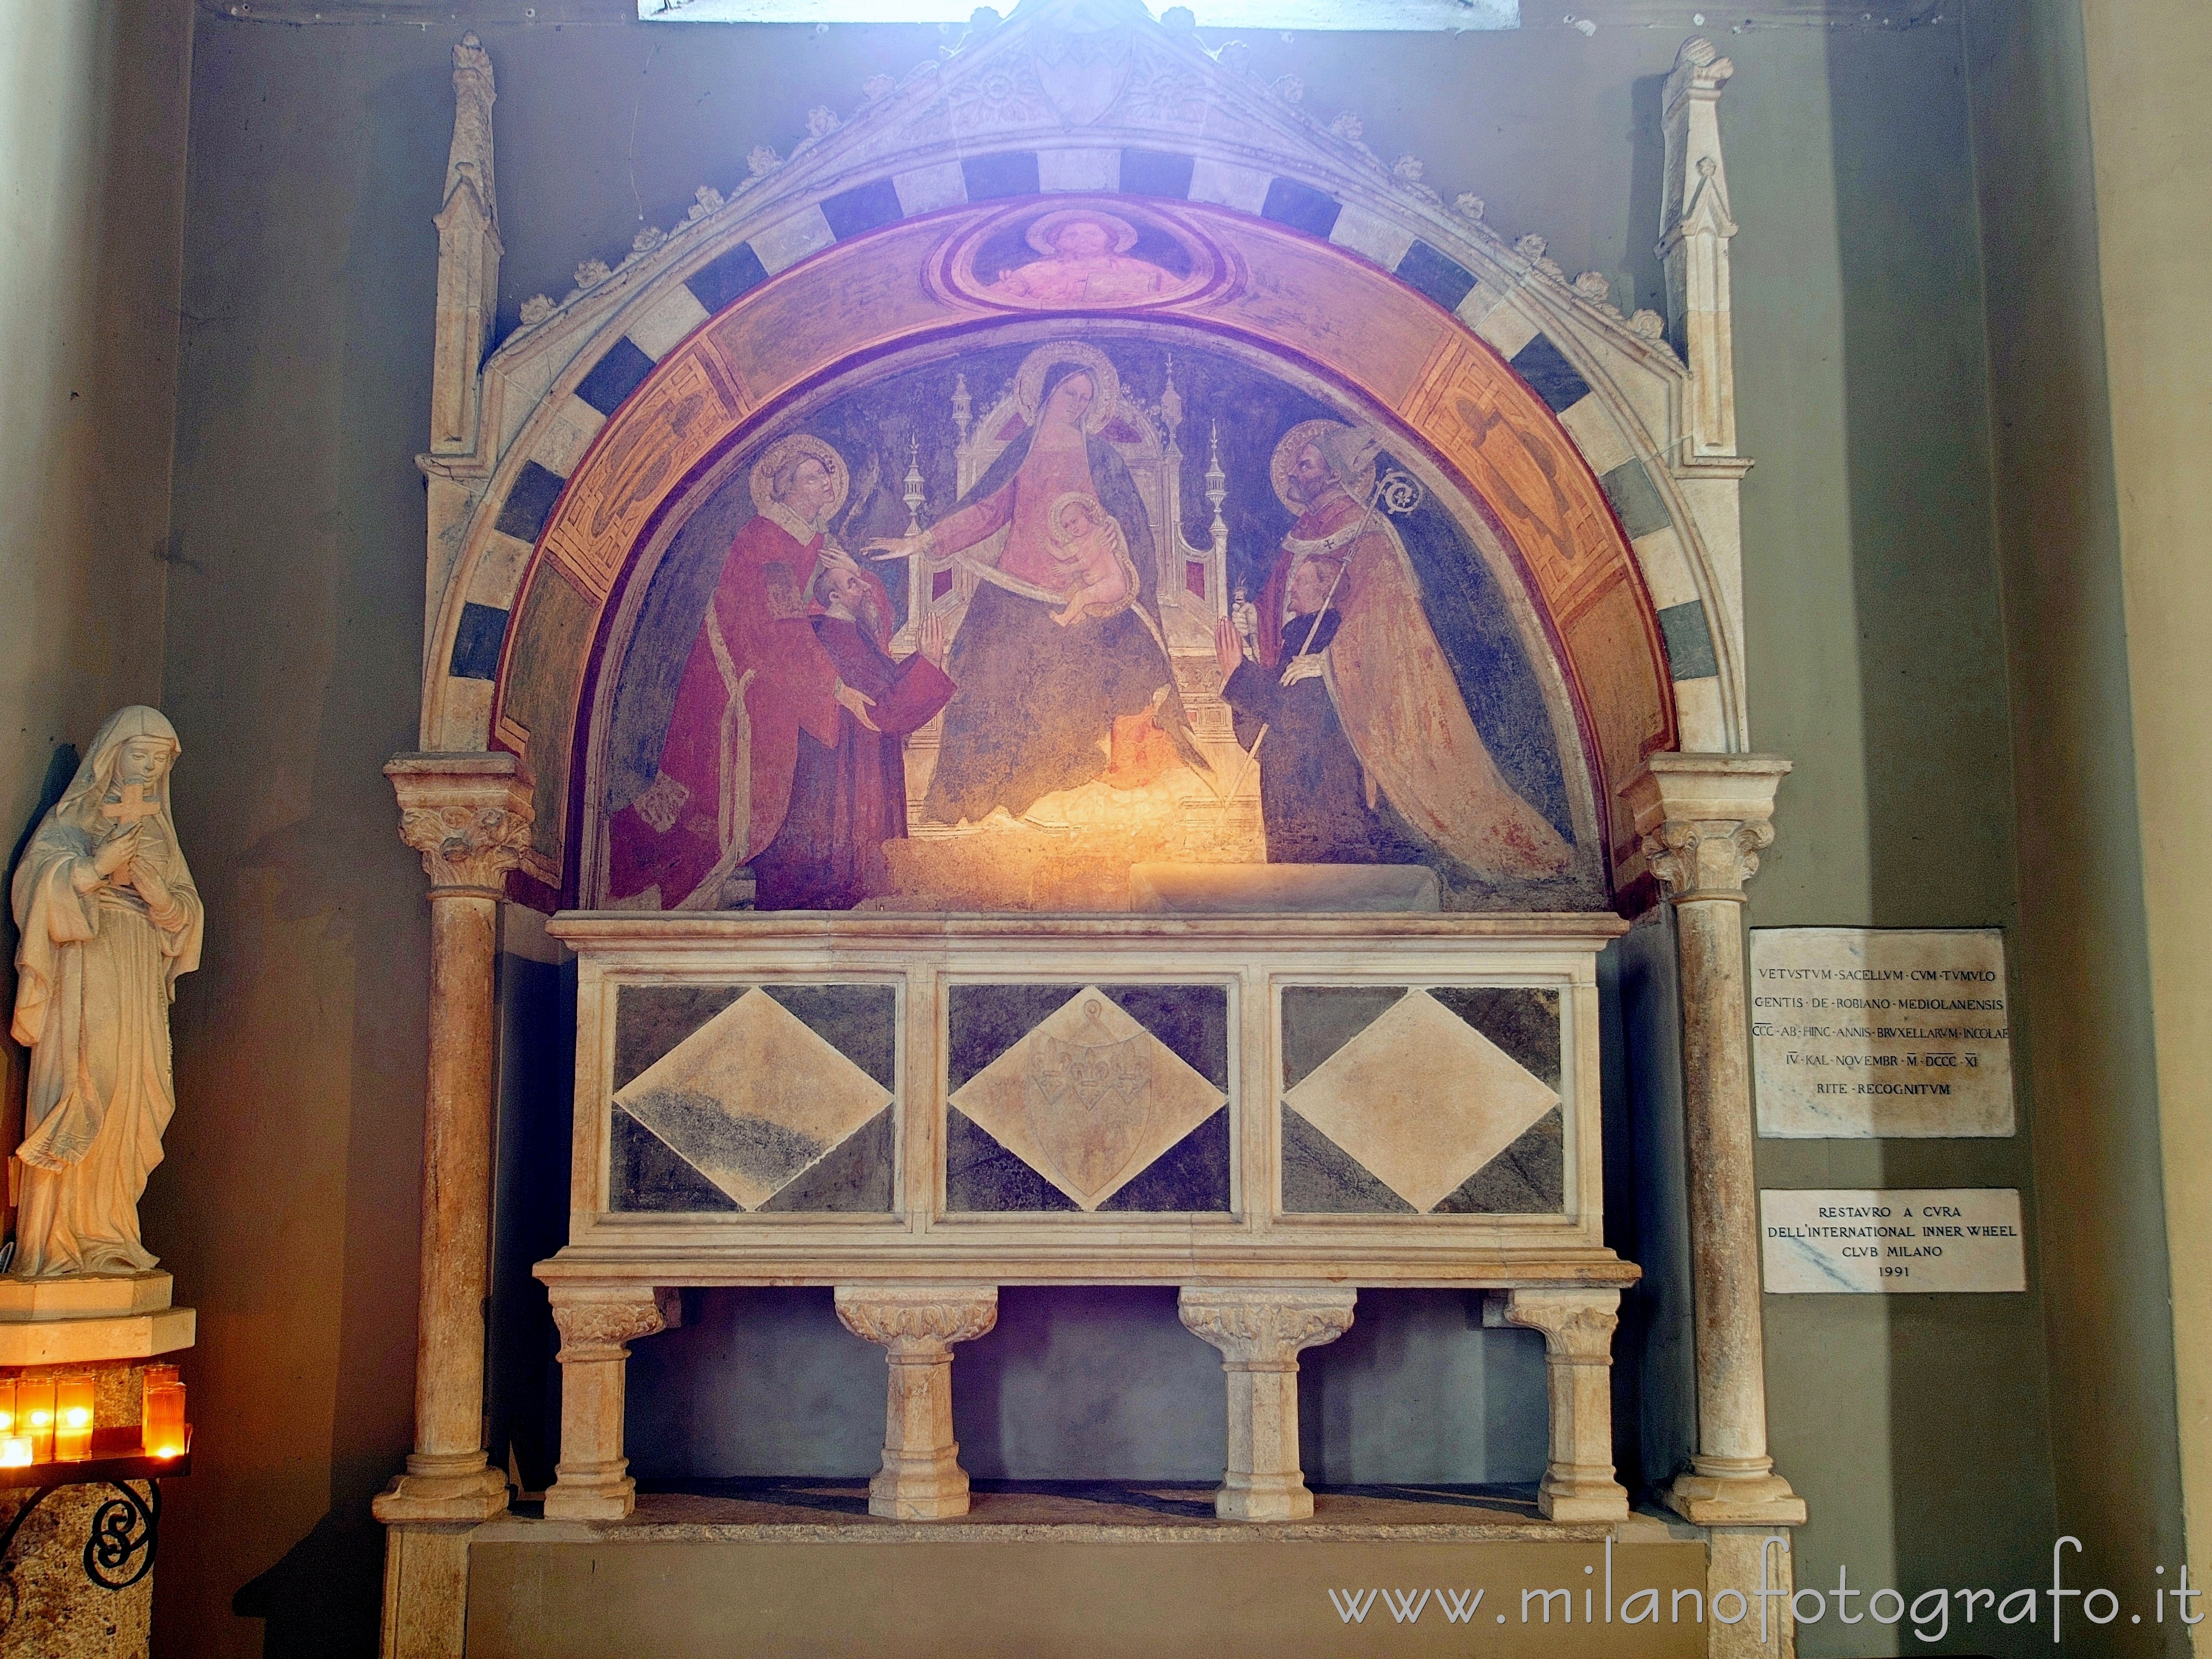 Milano: Tomba de Robbiani nella Basilica di San Lorenzo Maggiore - Milano